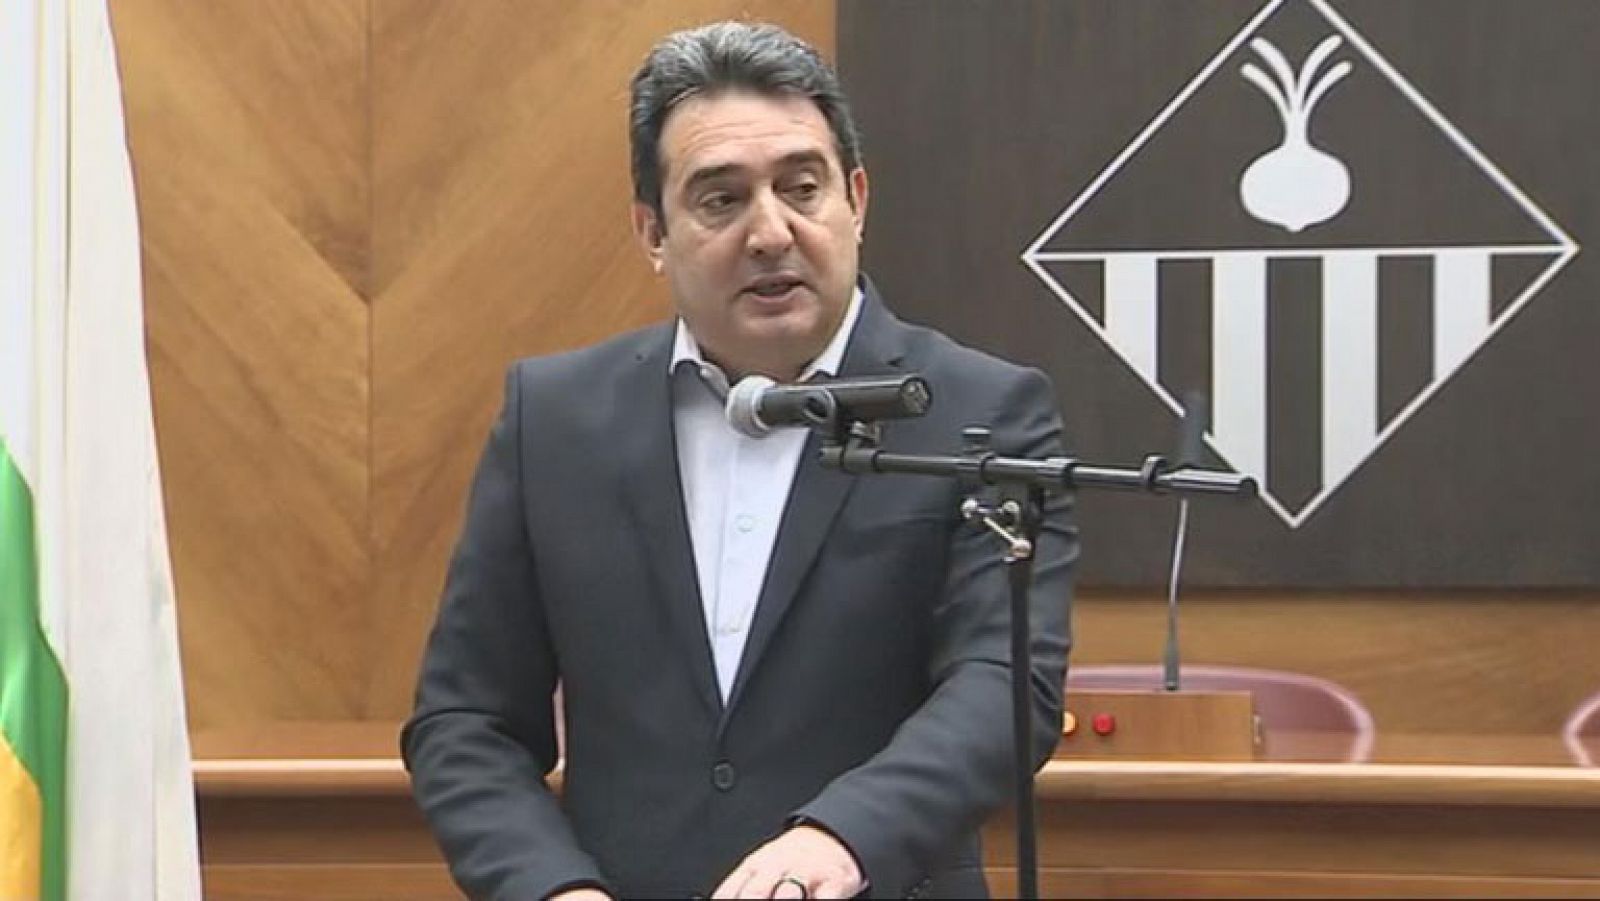 El alcalde de Sabadell, el socialista Manuel Bustos, anuncia que deja el cargo